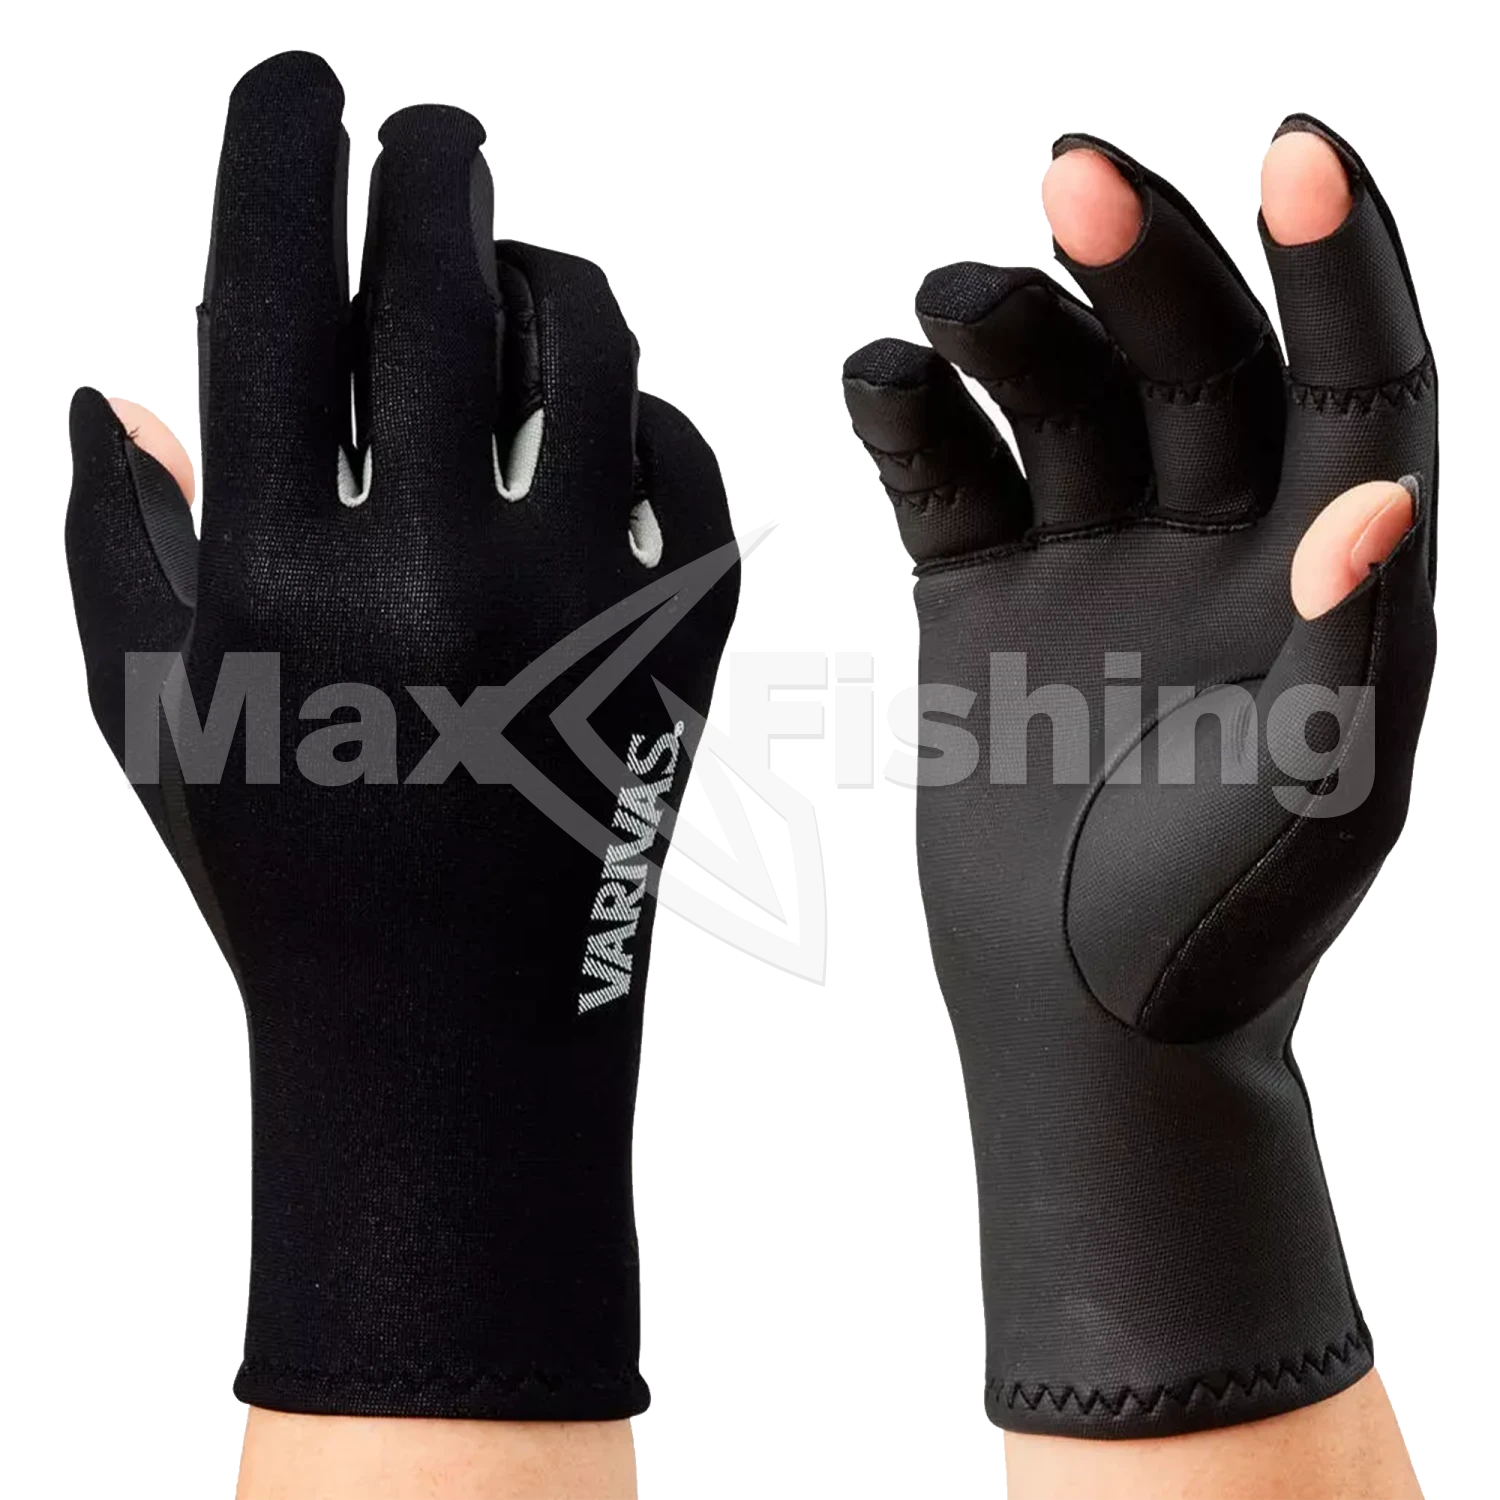 Перчатки Varivas Chloroprene Glove 3 VAG-19 L Black Gray